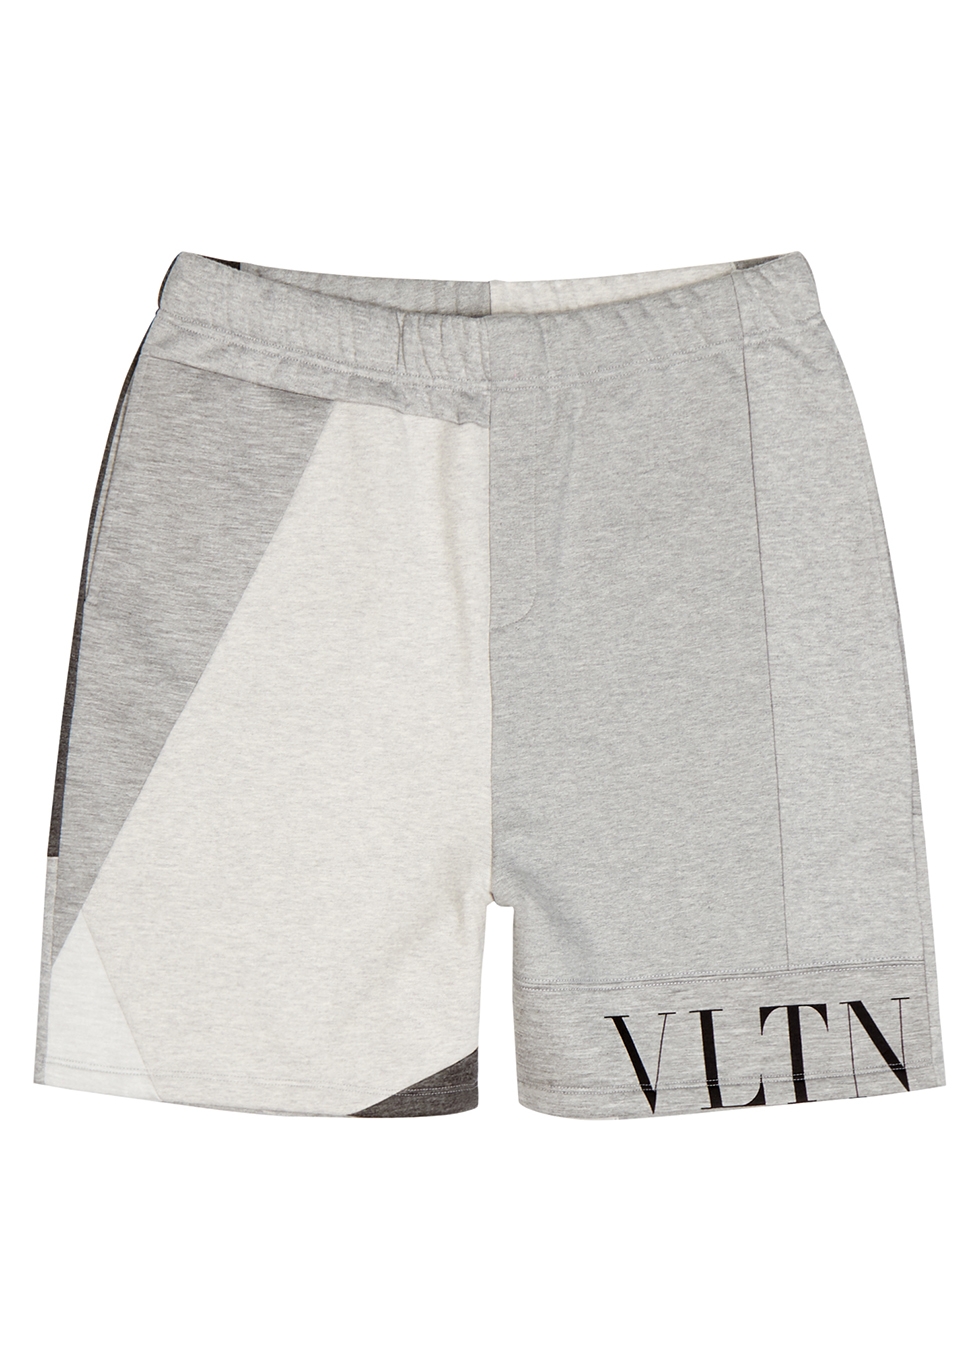 VLTN grey panelled shorts